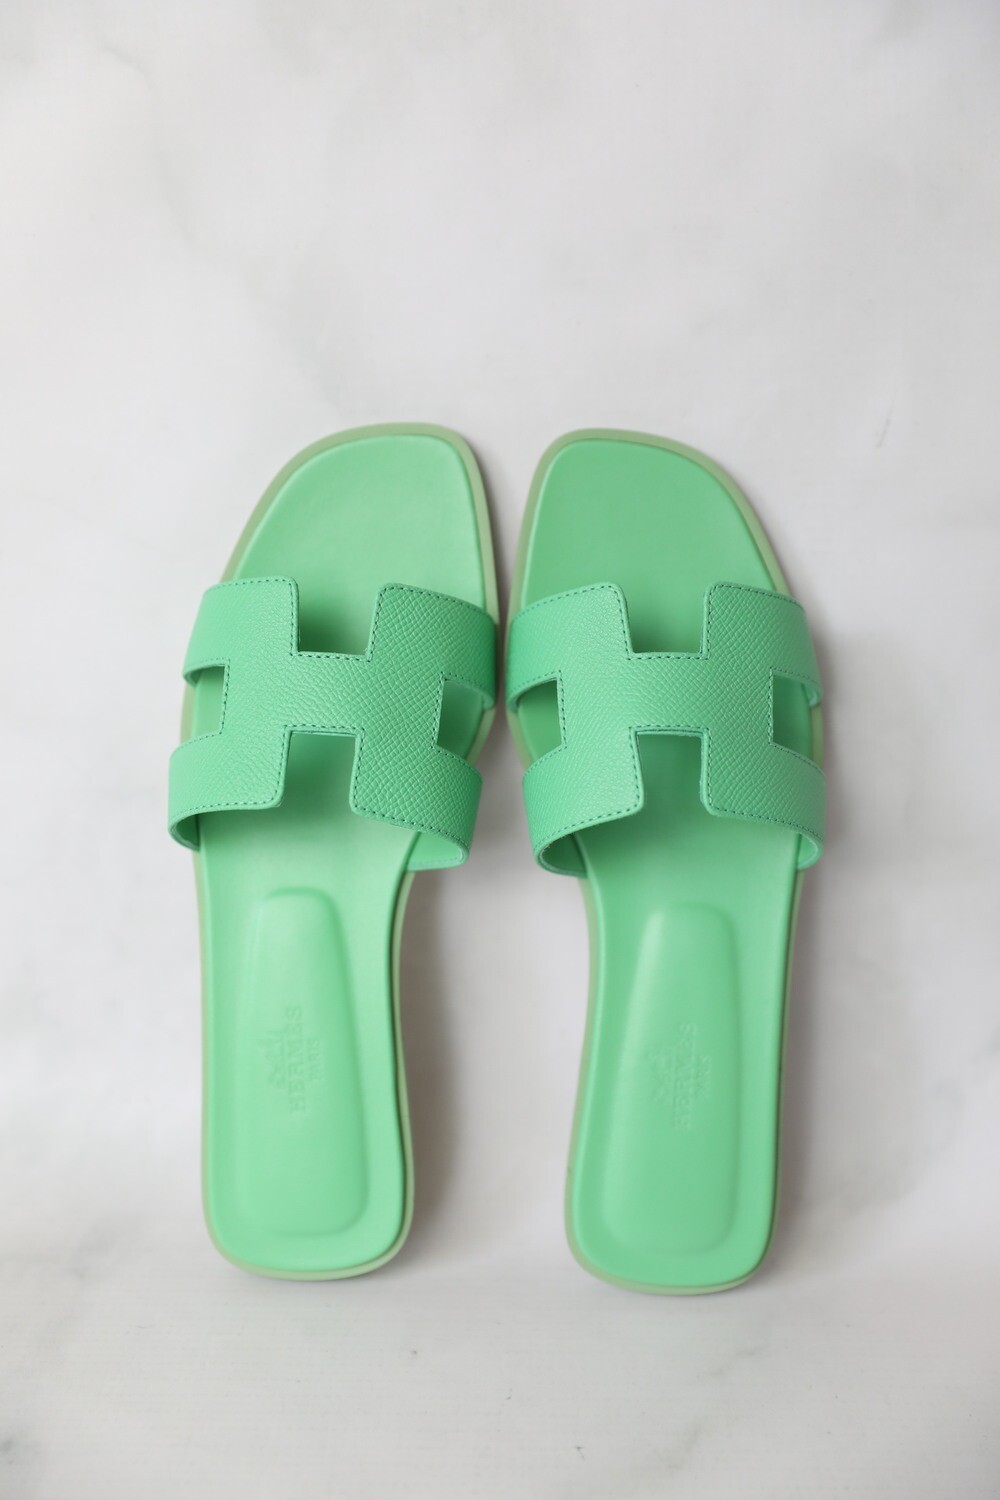 Hermes Oran Sandals Flat, Green, Size 40, New in Box WA001